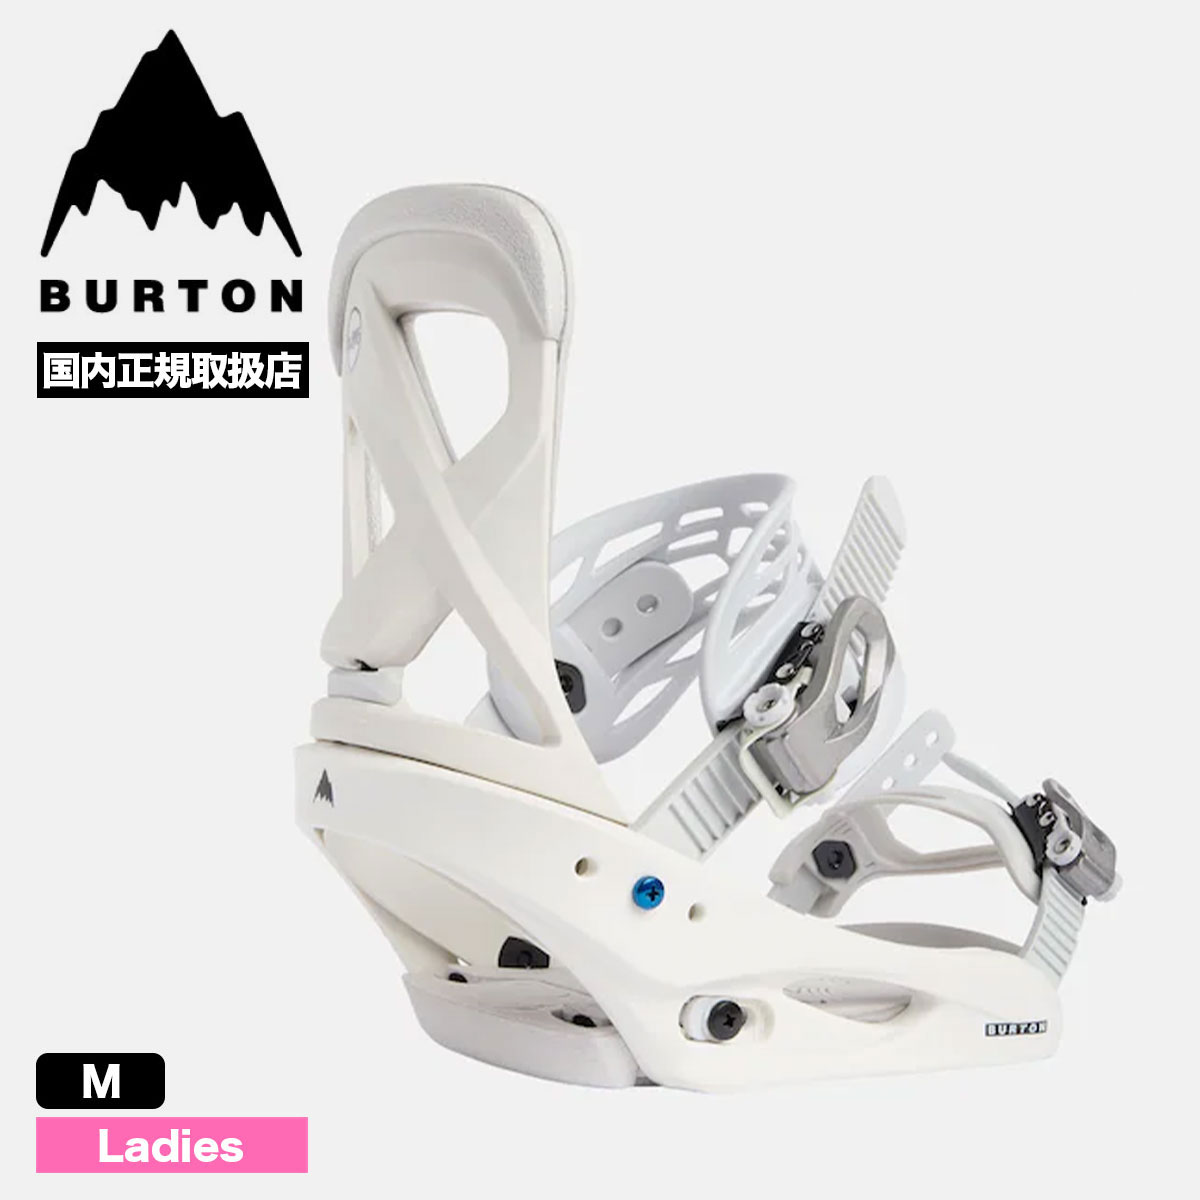 BURTON mission スノーボードビンディング - スノーボード